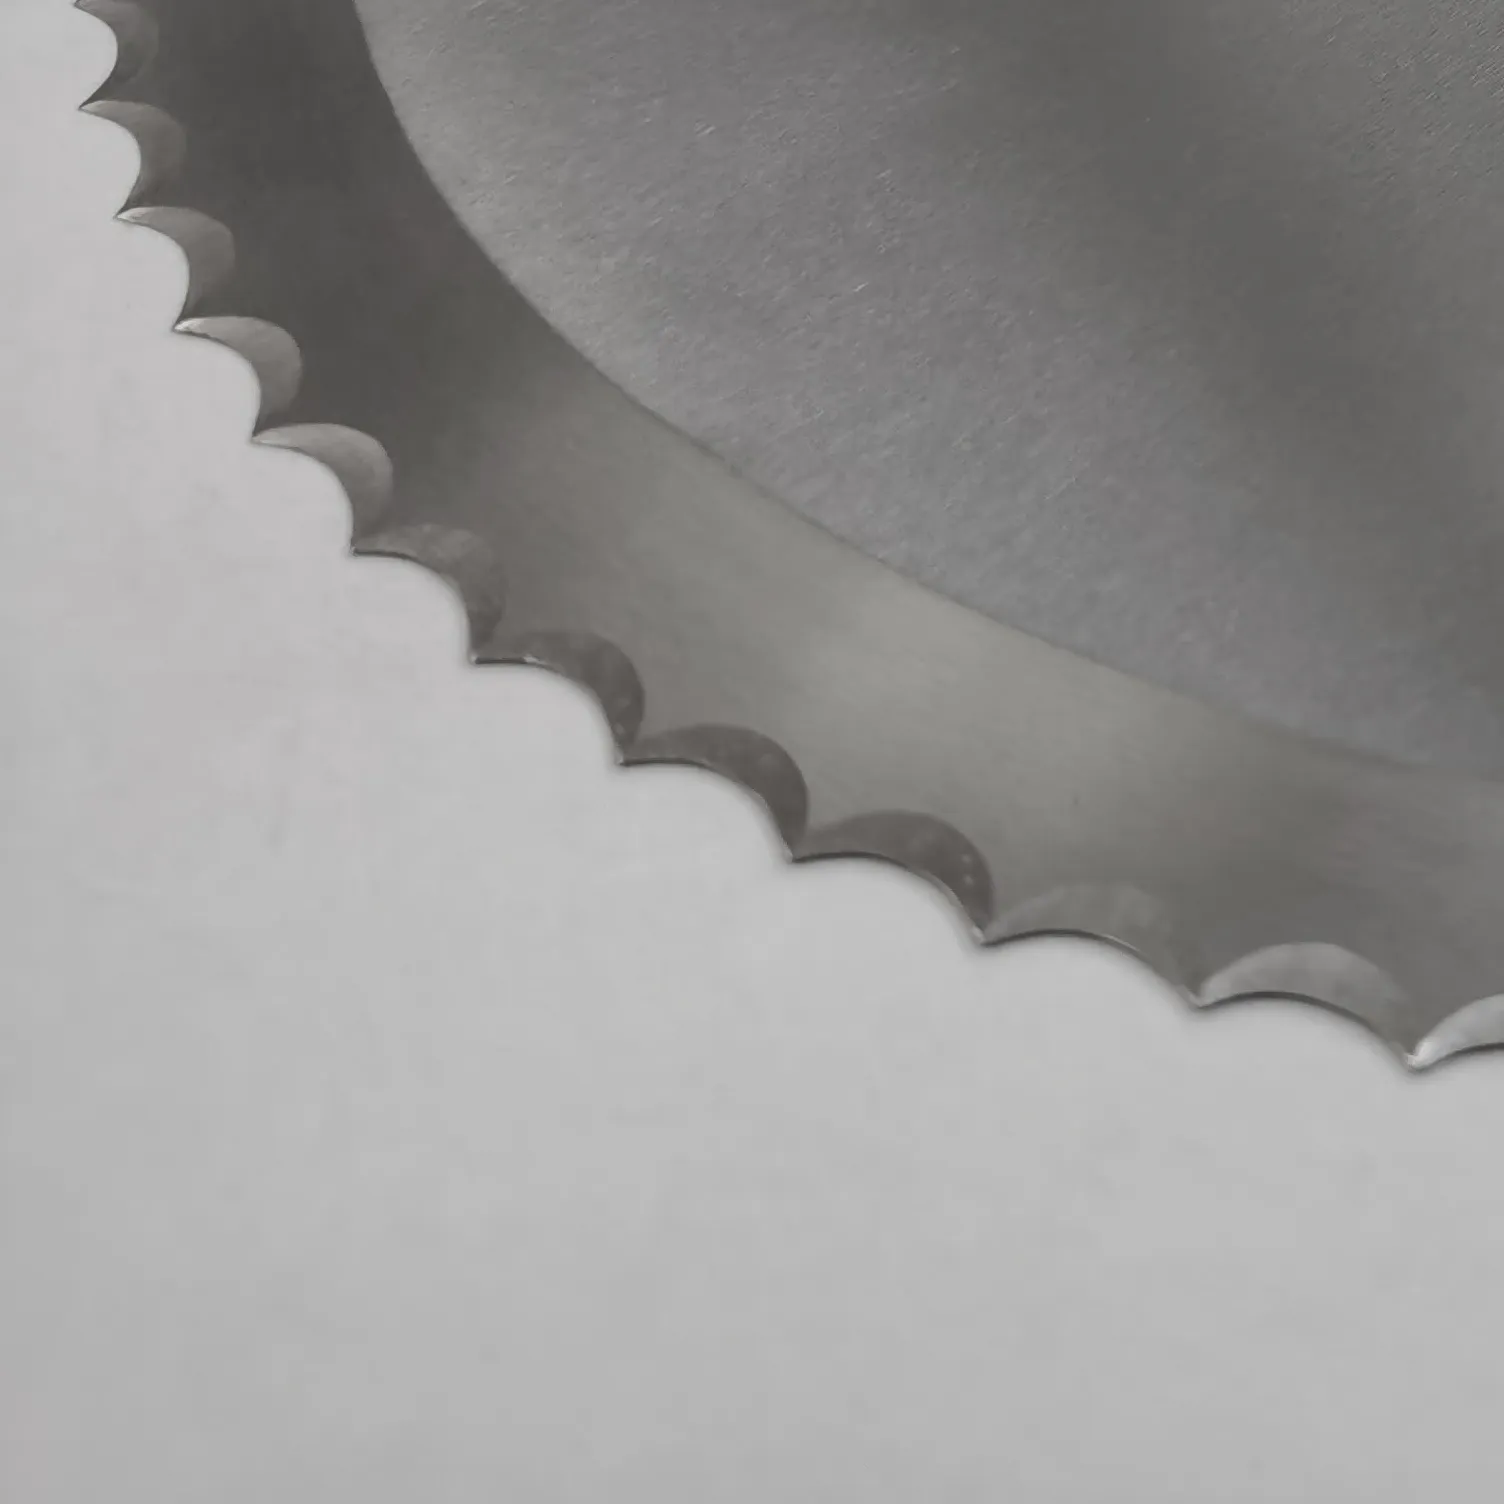 เครื่องตัดขนมปังเครื่องตัดขนมปังเครื่องตัดขนมปังมีดแปรรูปอาหารใบมีดสแตนเลส